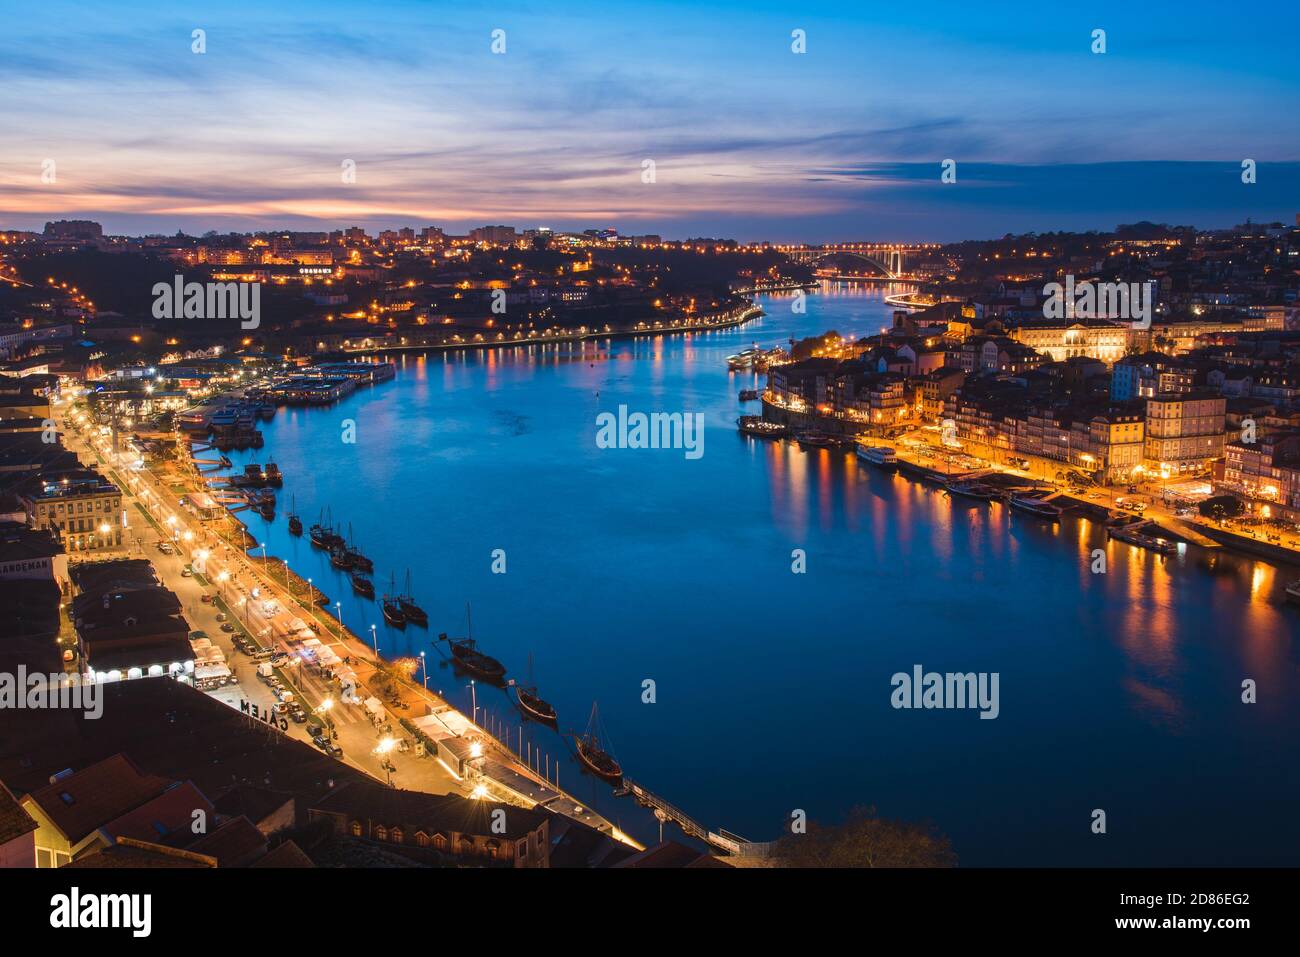 Vue de nuit sur le fleuve Douro entre Porto et Vila Nova Villes de Gaia au Portugal Banque D'Images